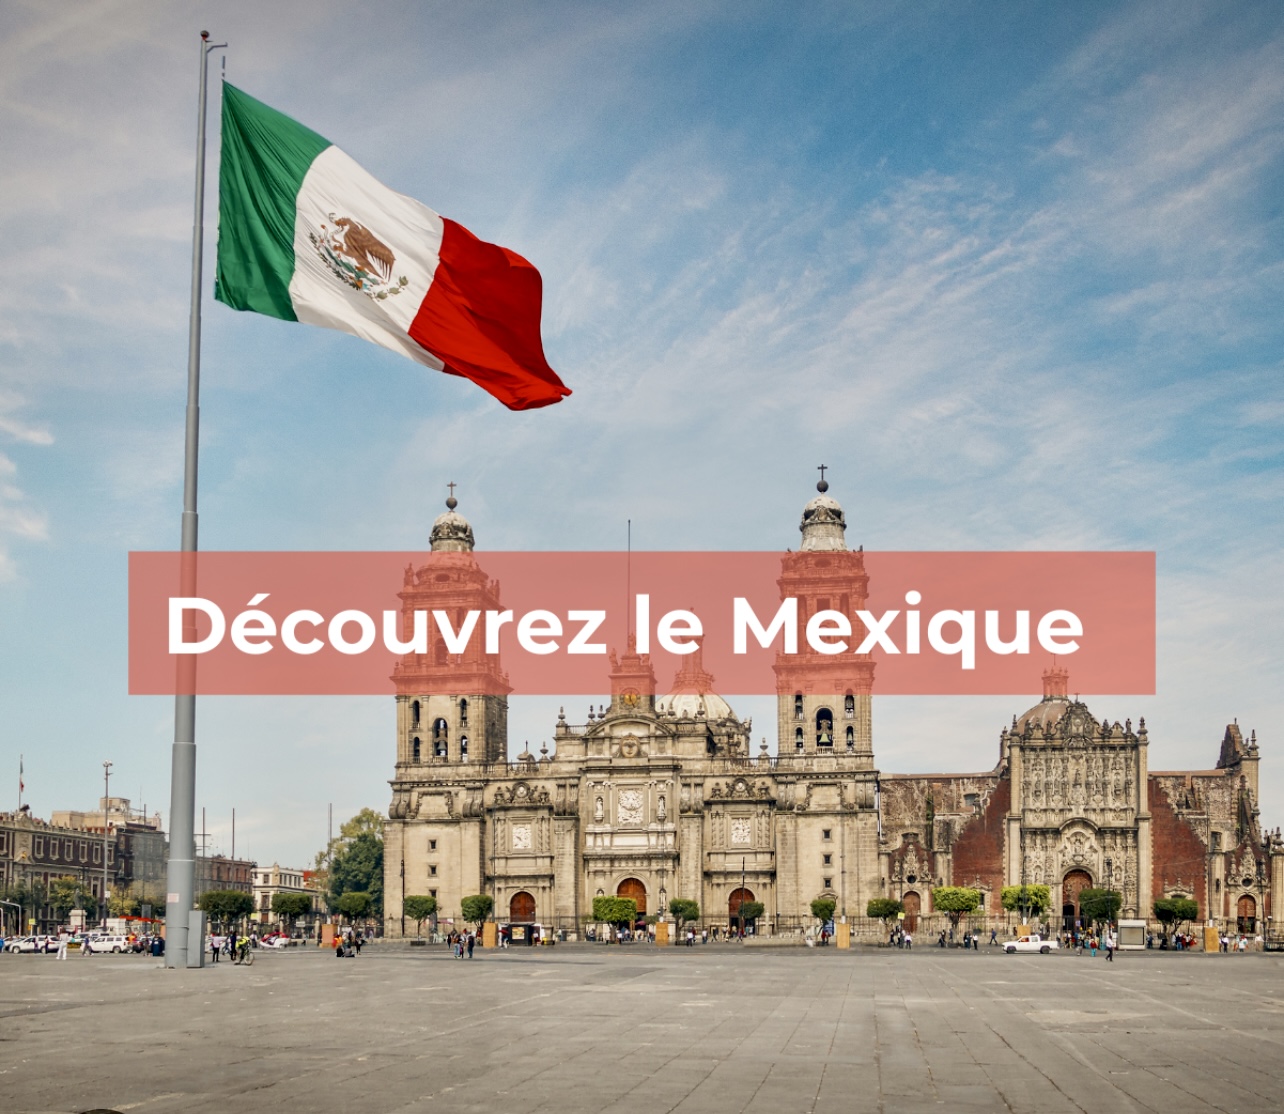 A découvrir le Mexique est un bâtiment entouré d'un drapeau mexicain.